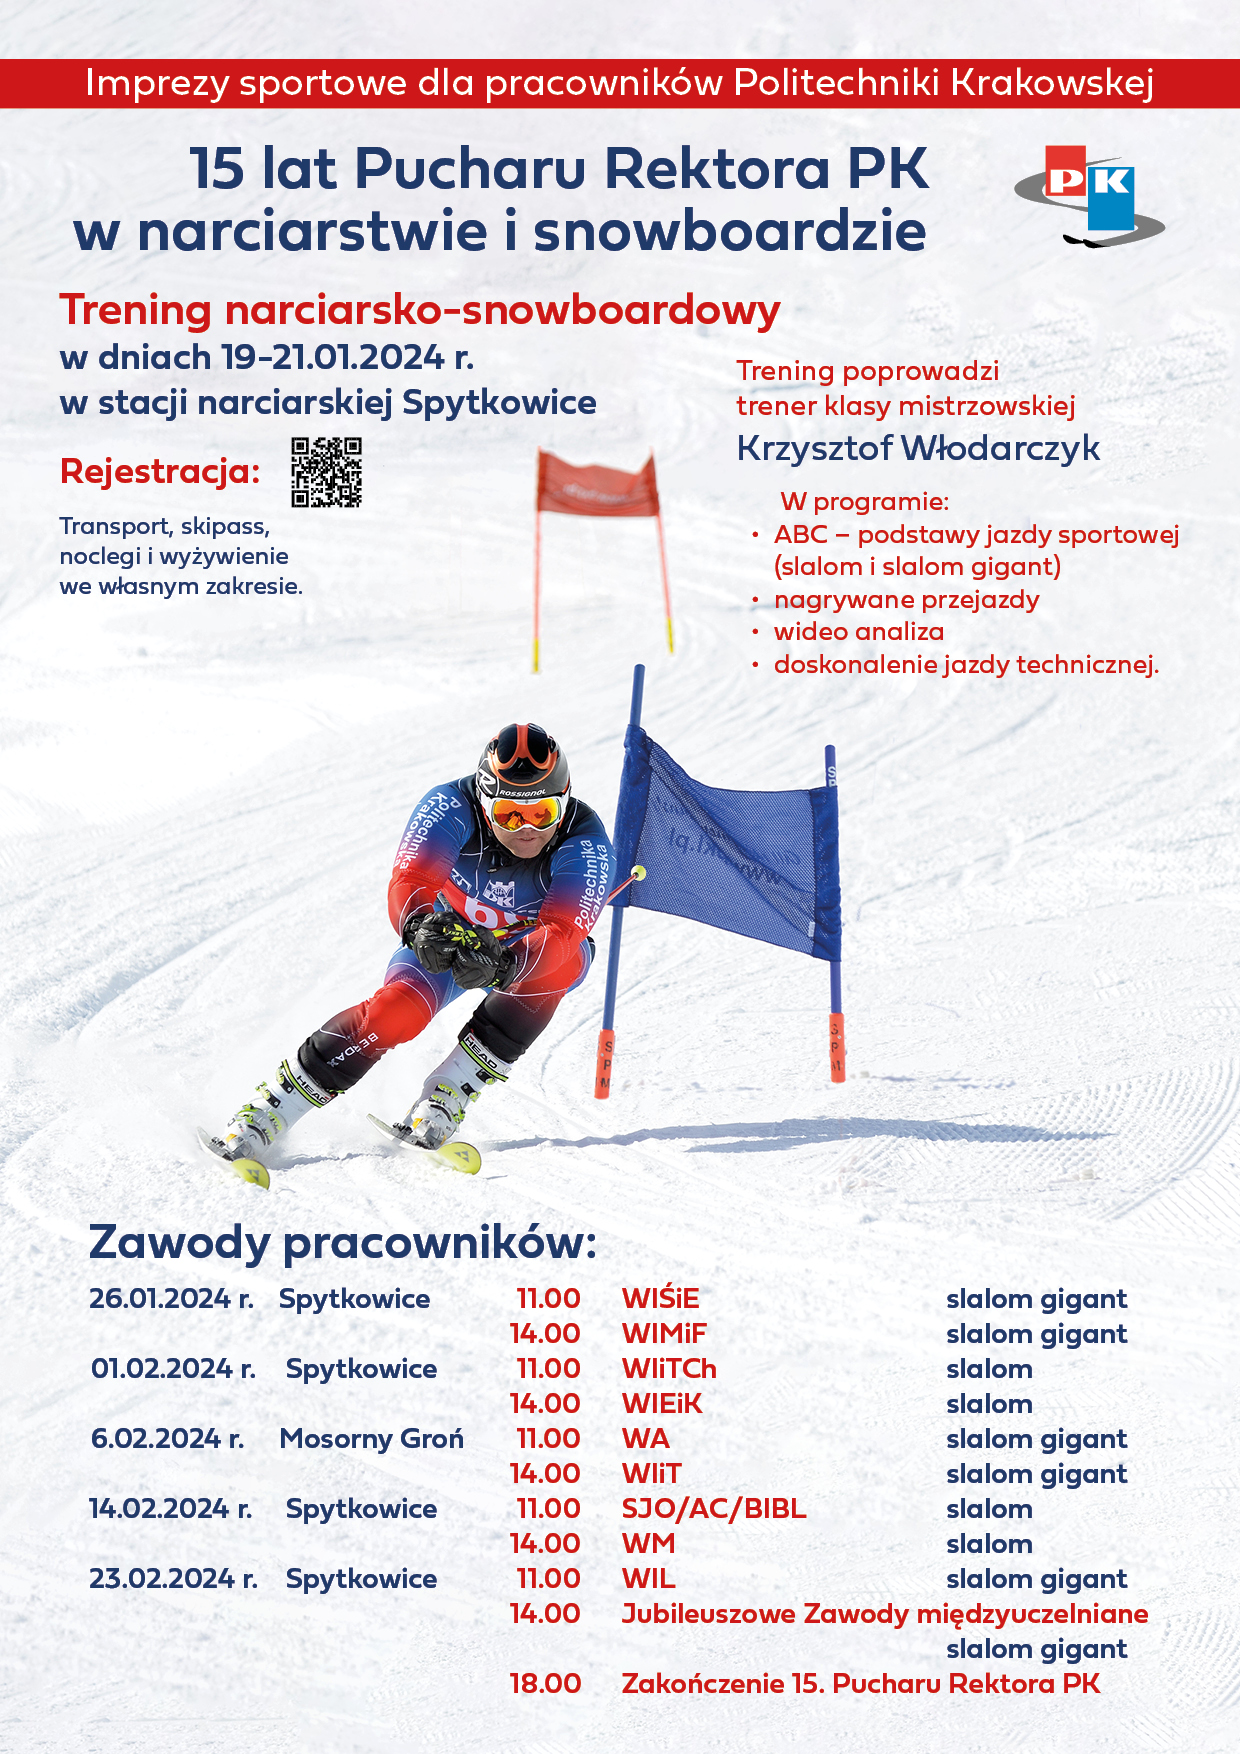 plakat przedstawiający narciarza